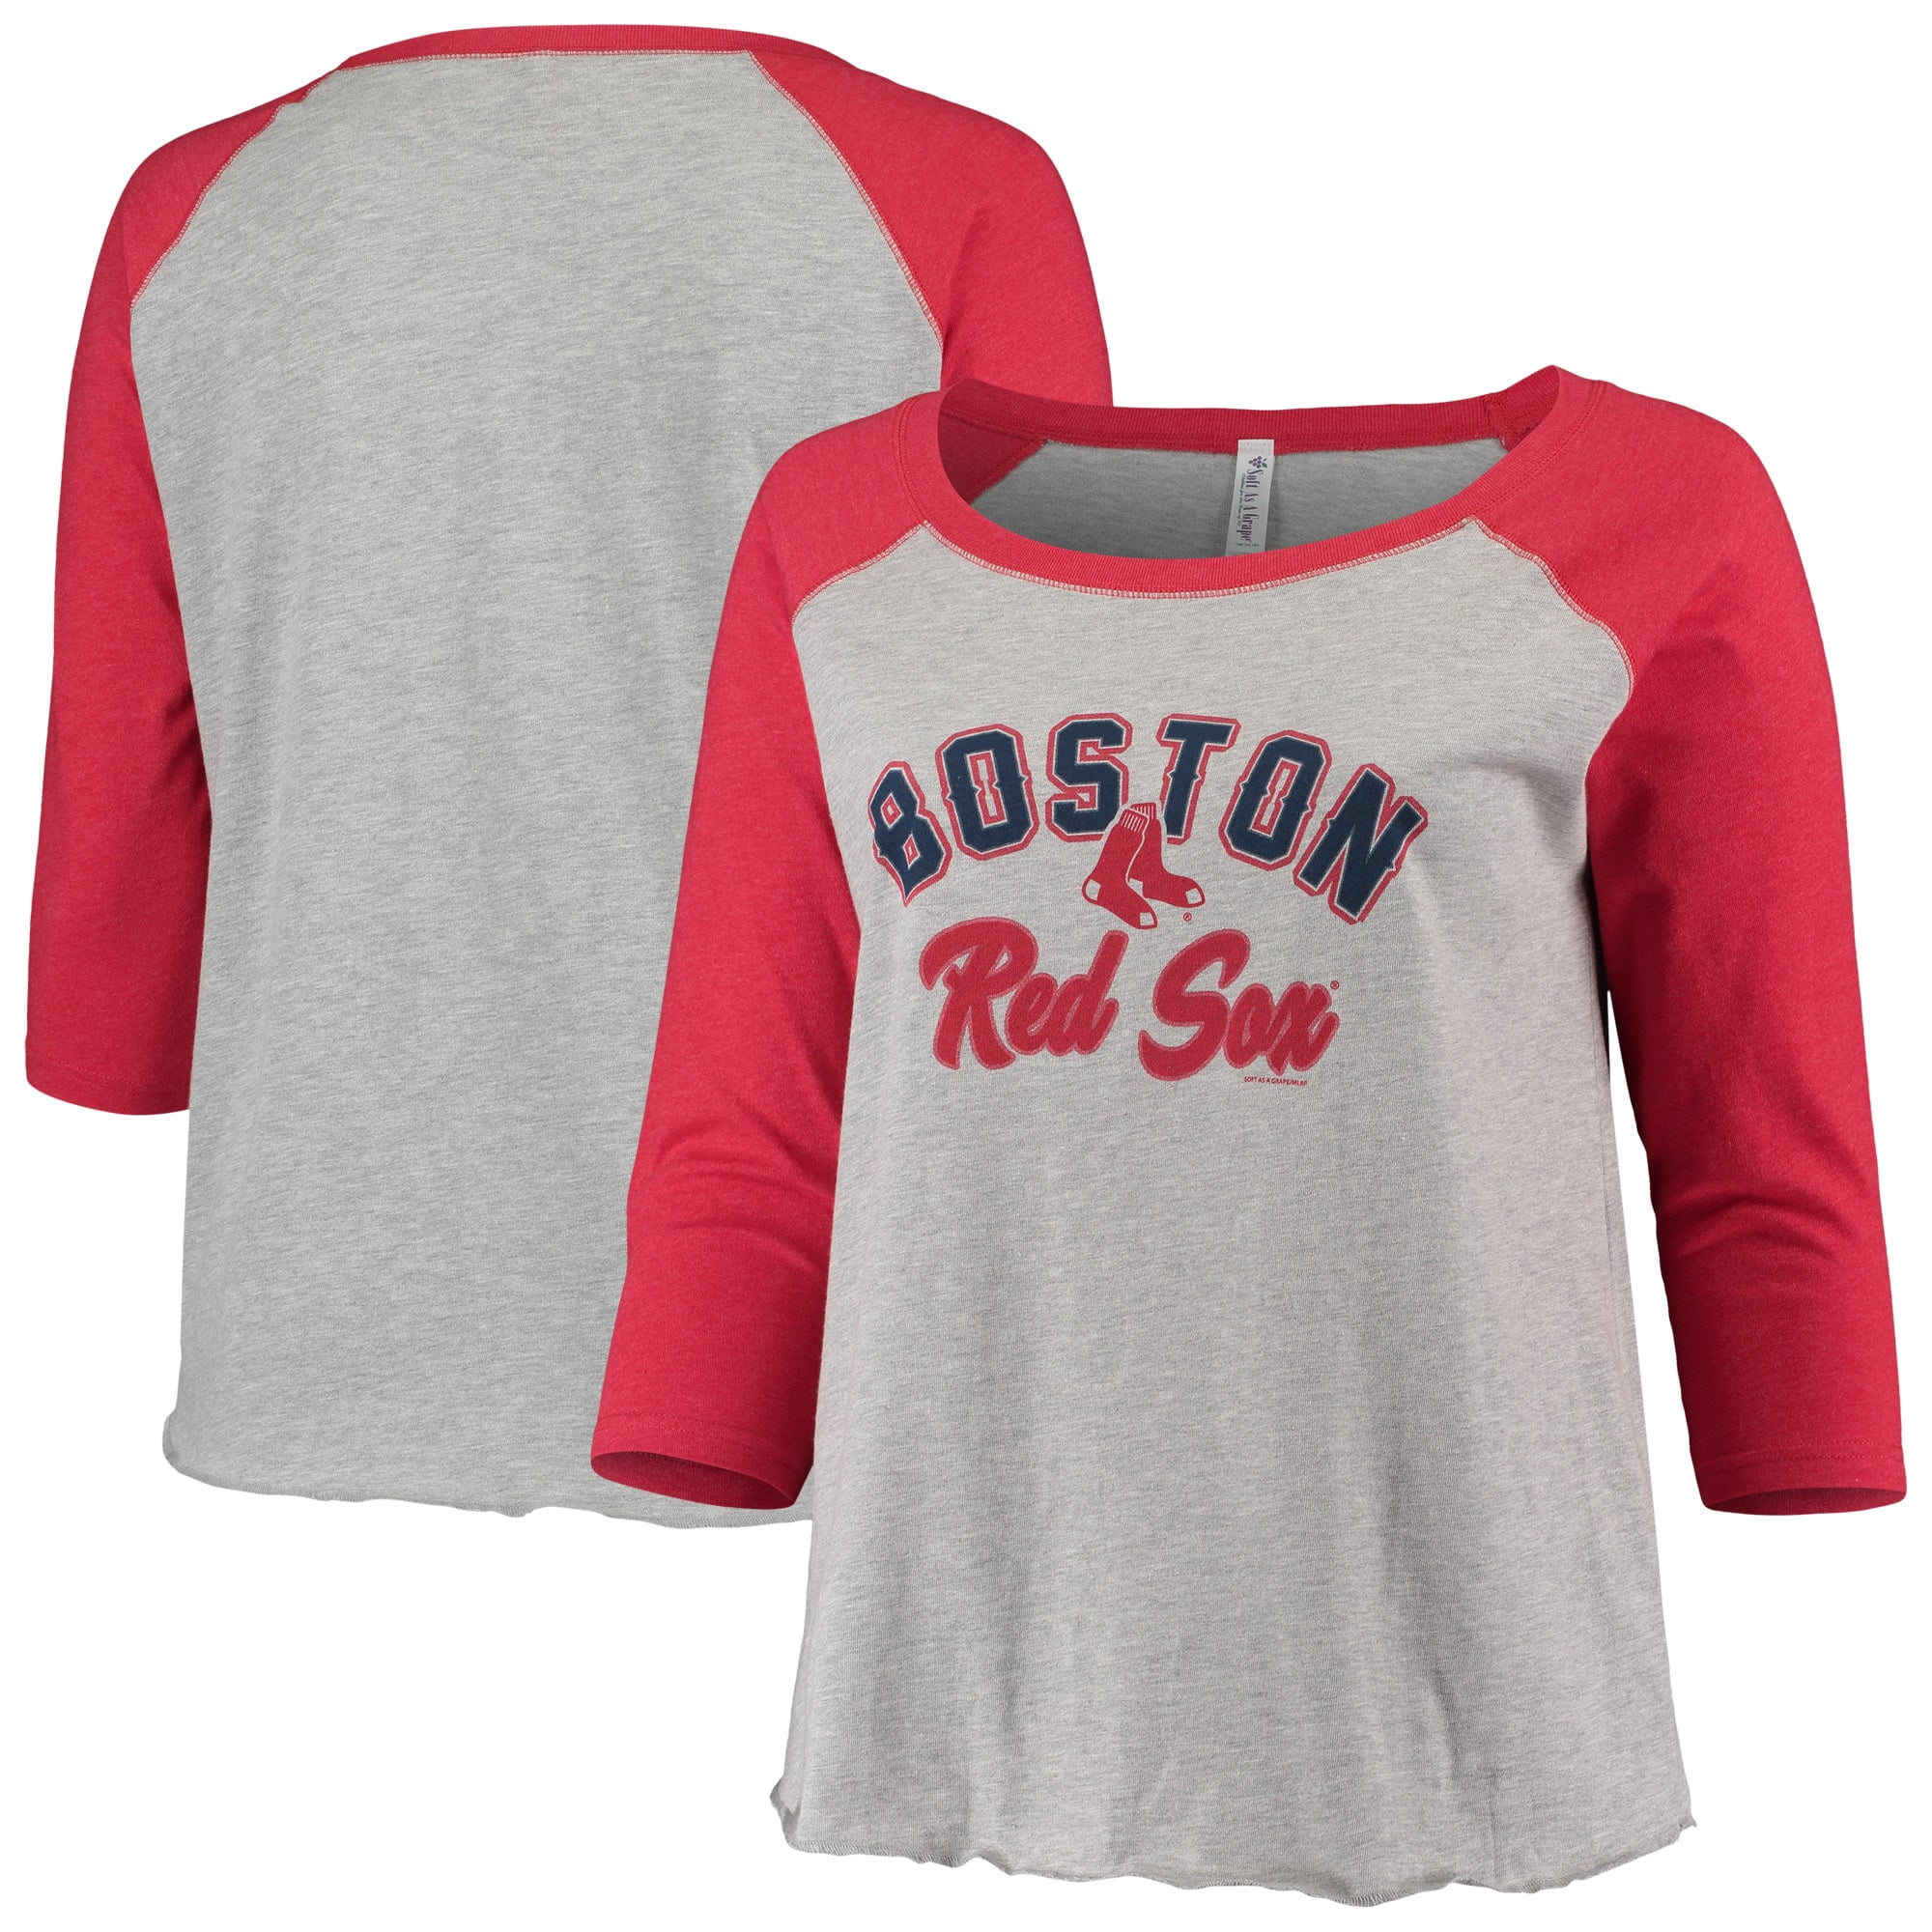 boston red sox pride shirt